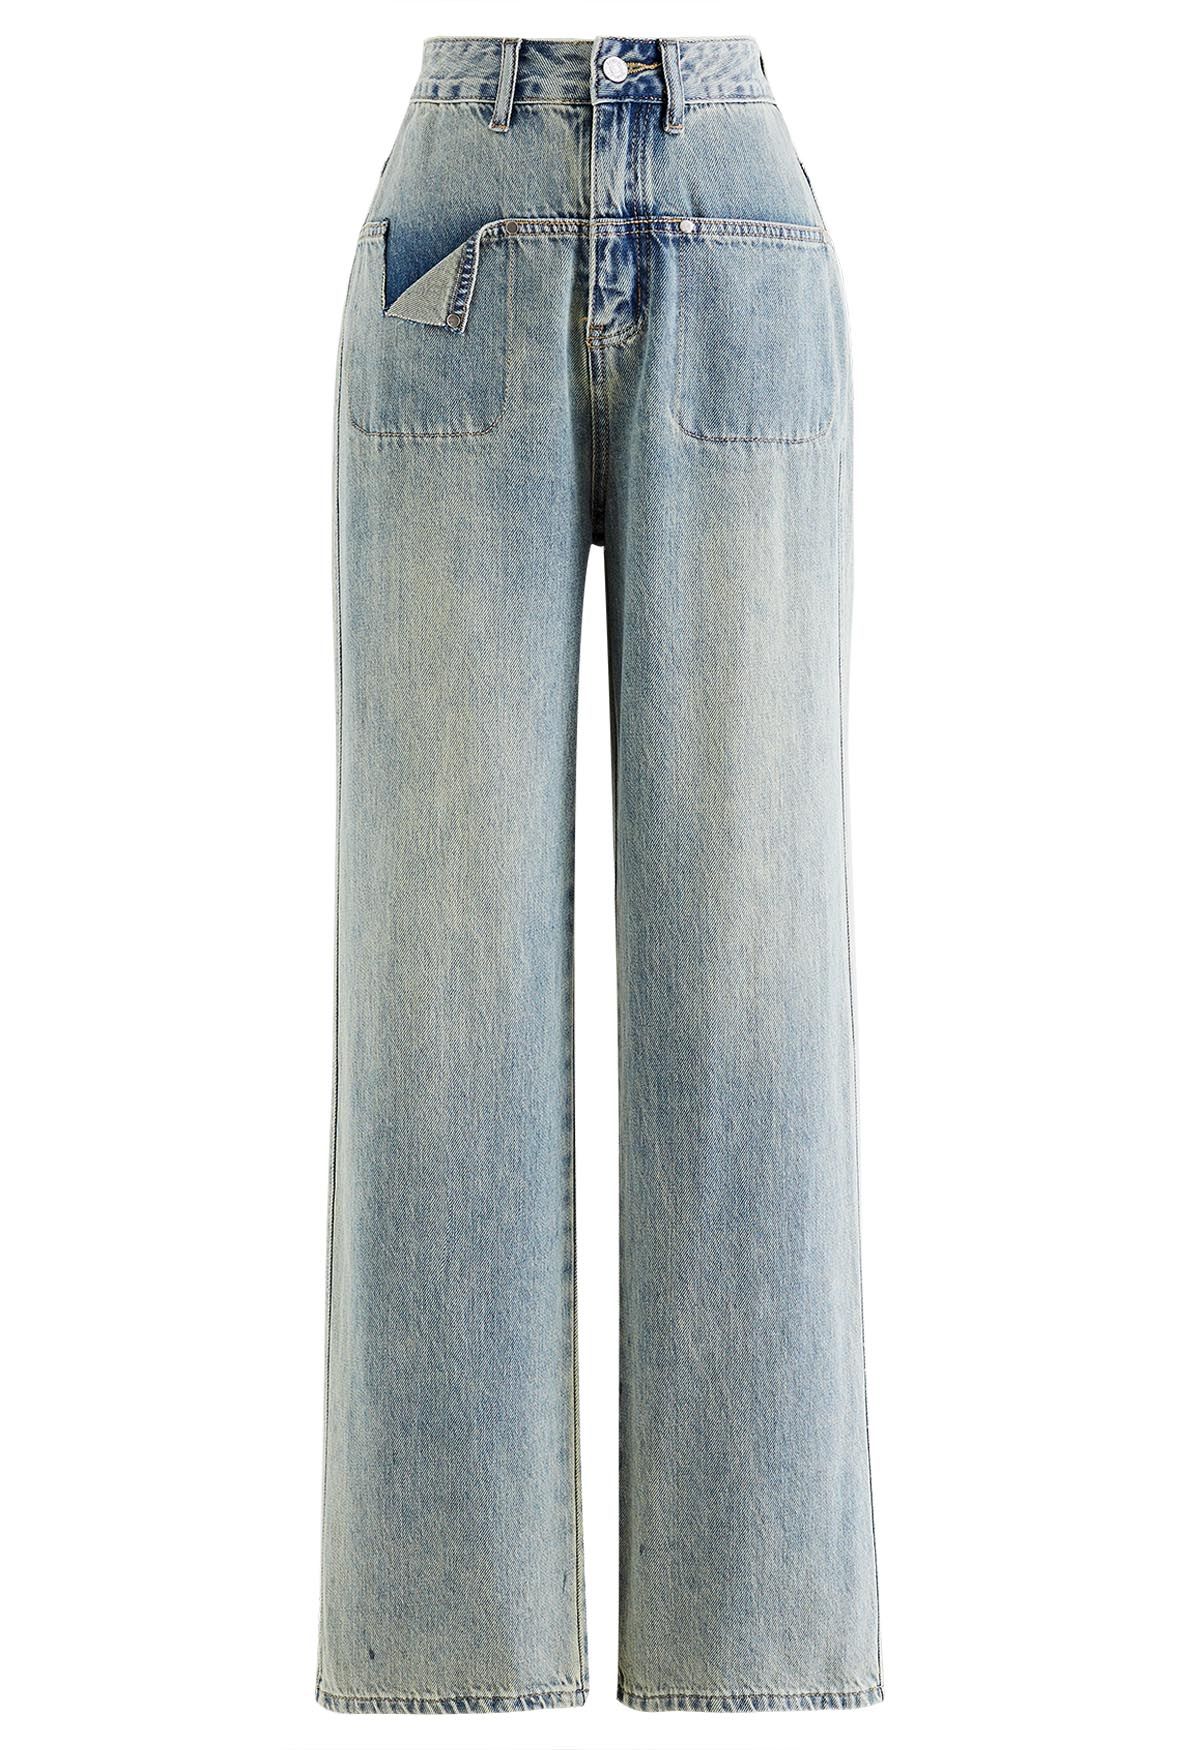 Jeans de pernera recta con bolsillo recortado exclusivo